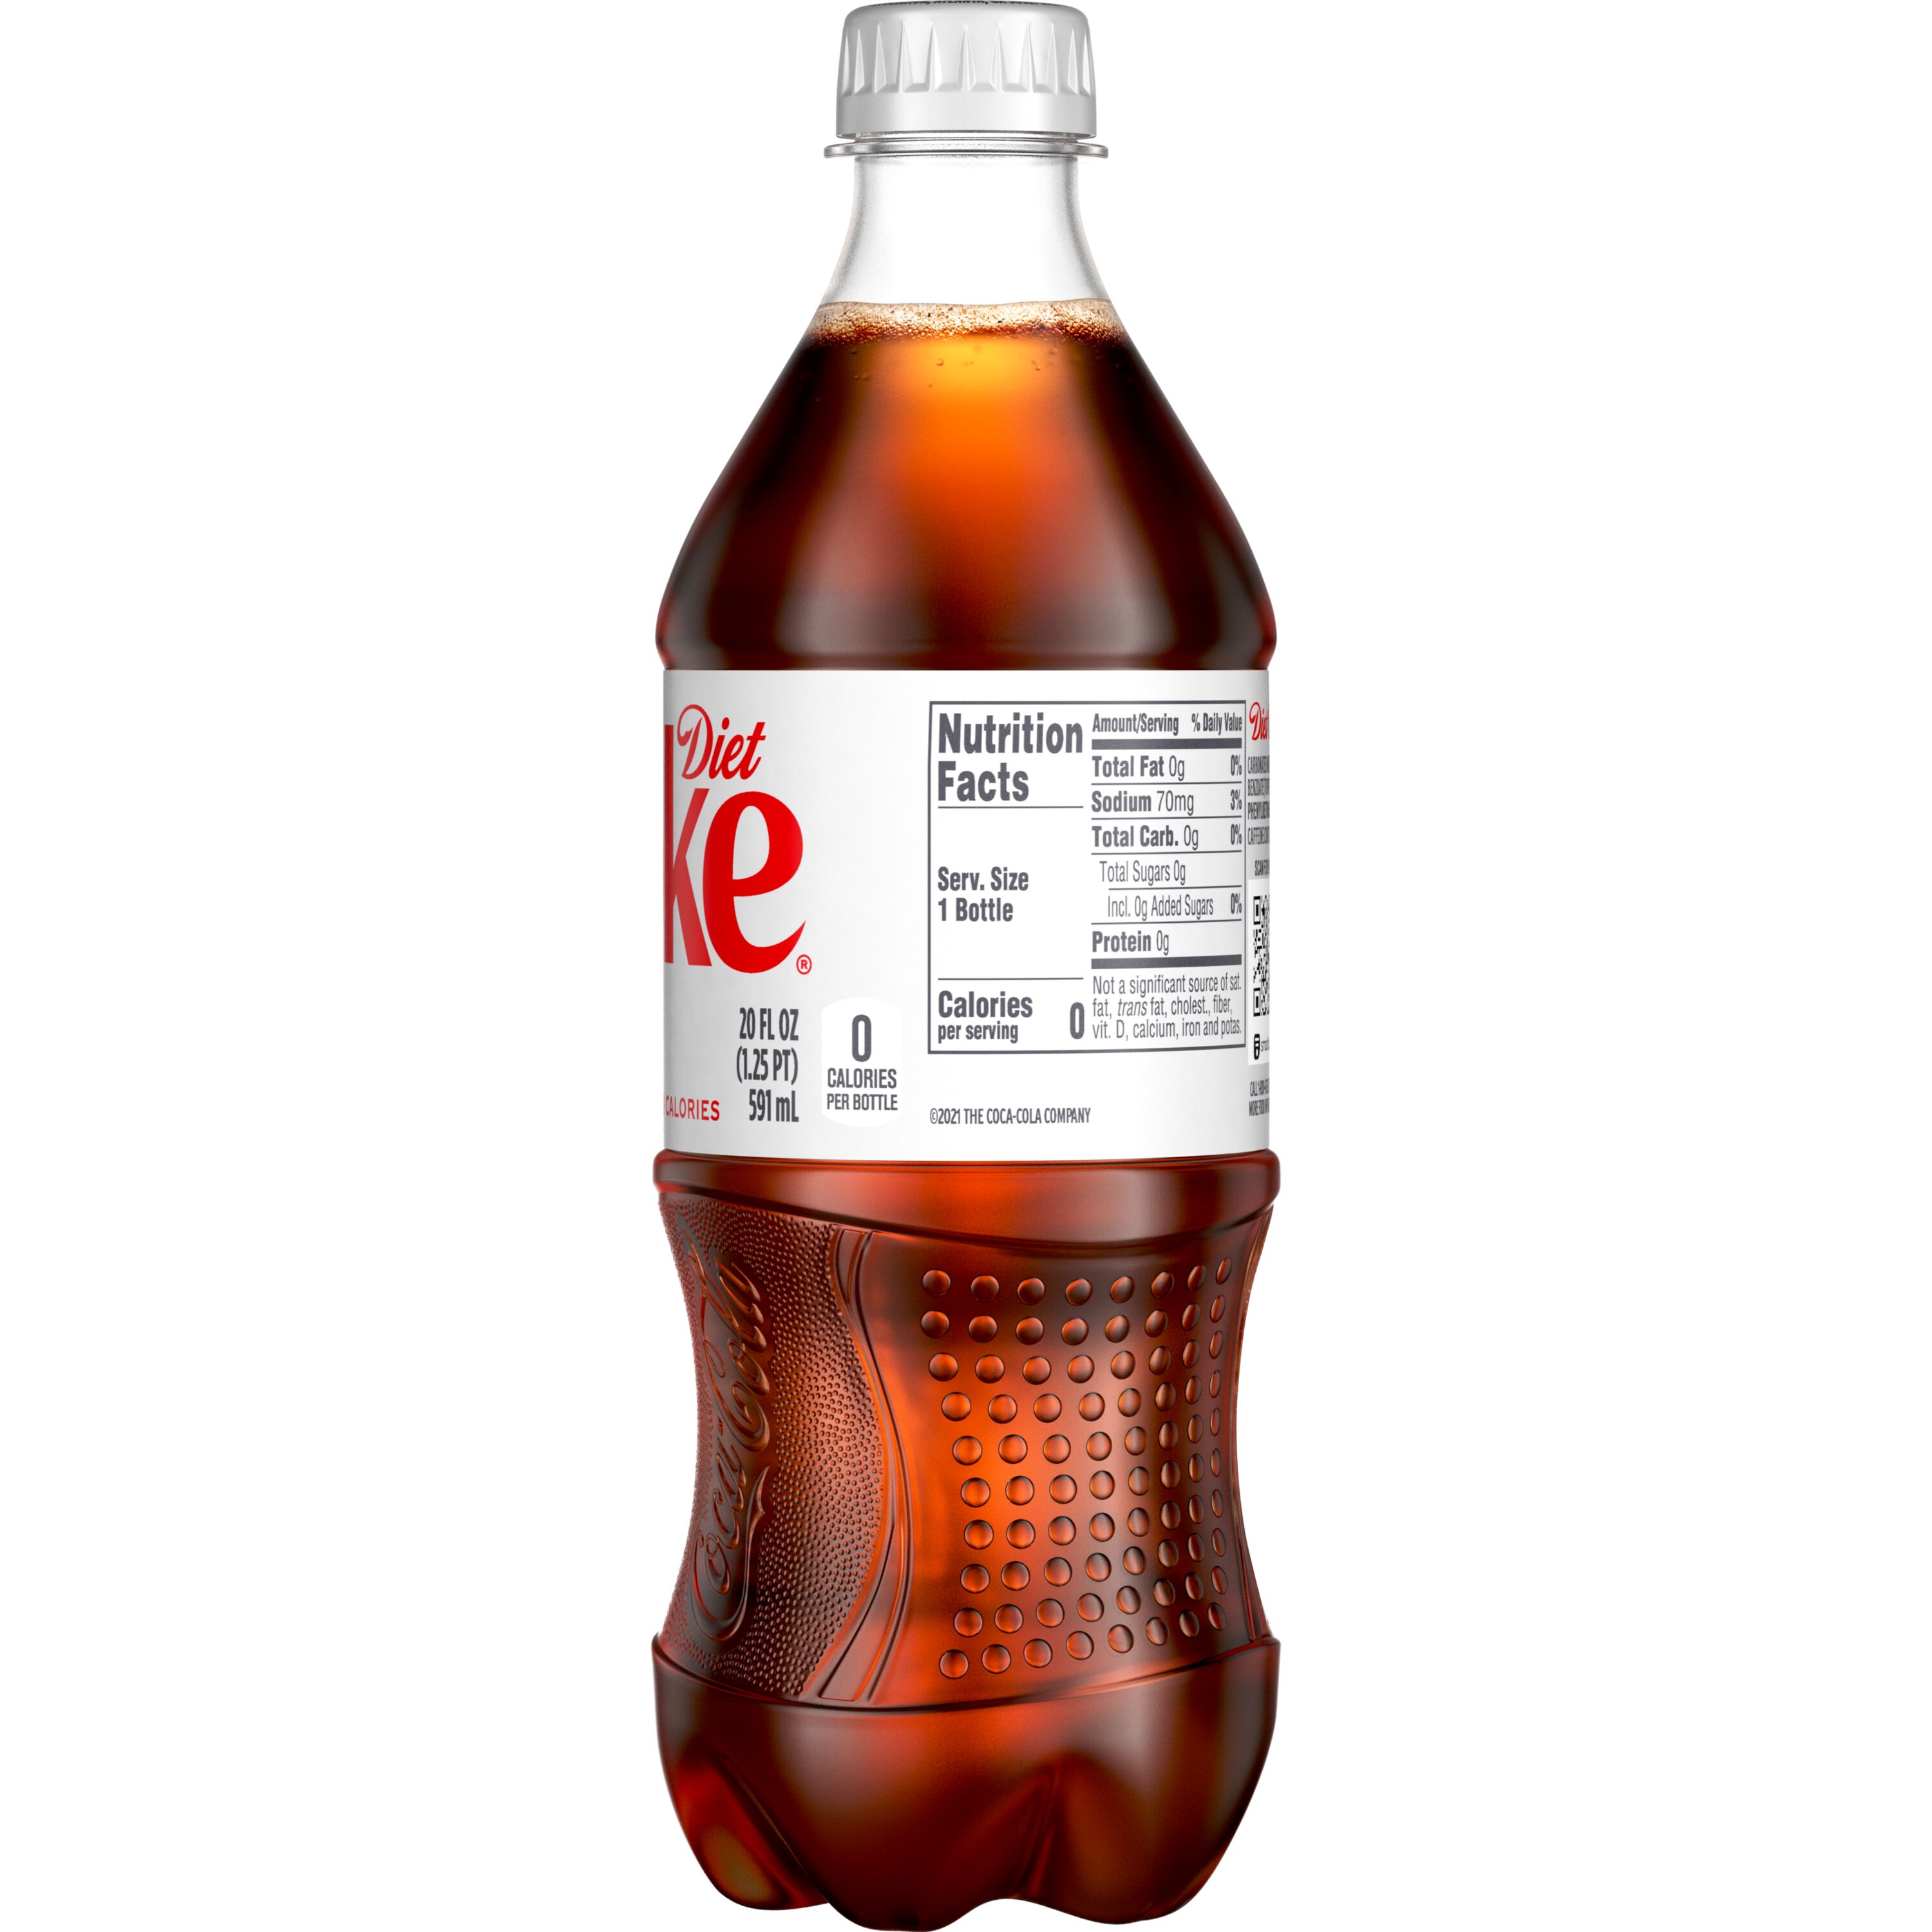 Coca-Cola Bottle Drink - Zero Sugar